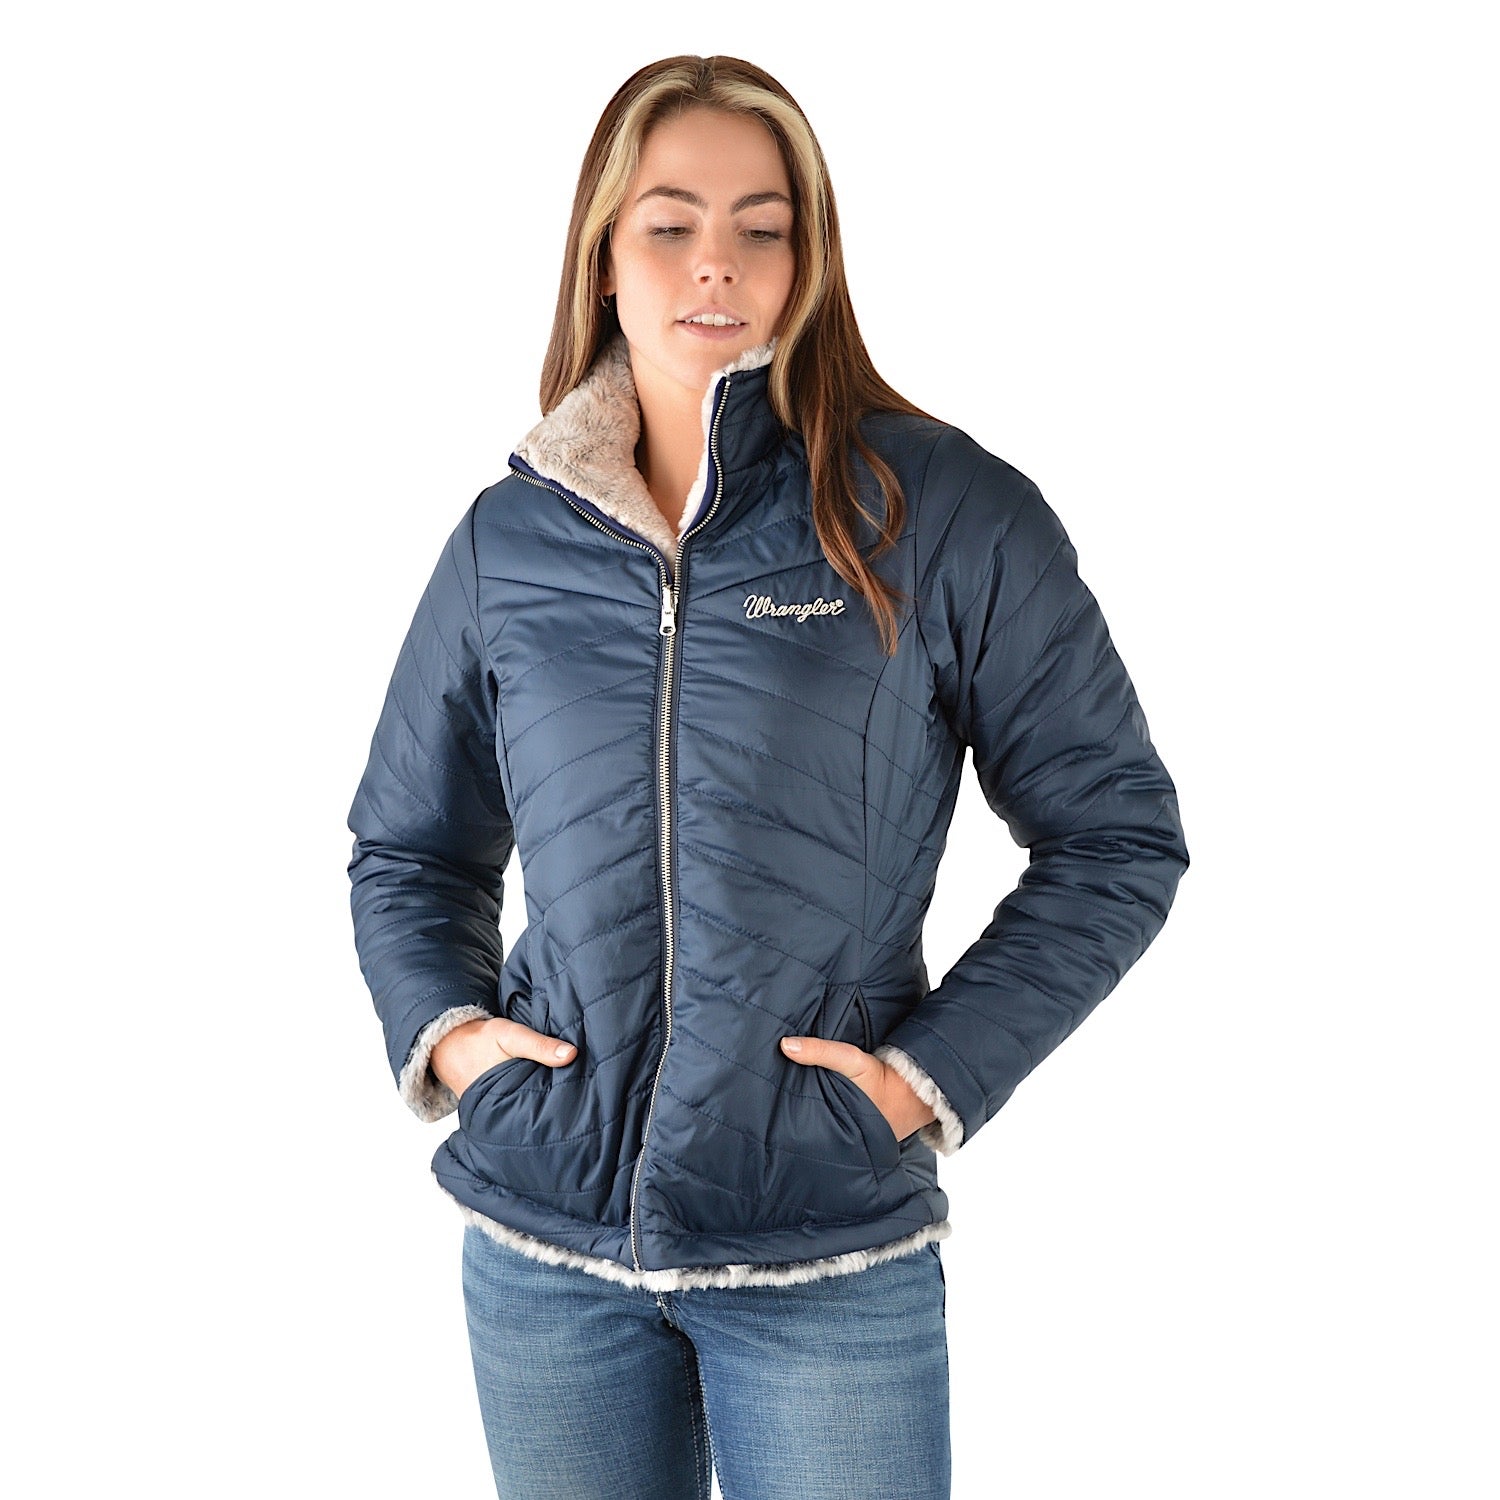 Buy Wrangler Womens Maya Reversible Jacket Navy/Grey - The Stable Door